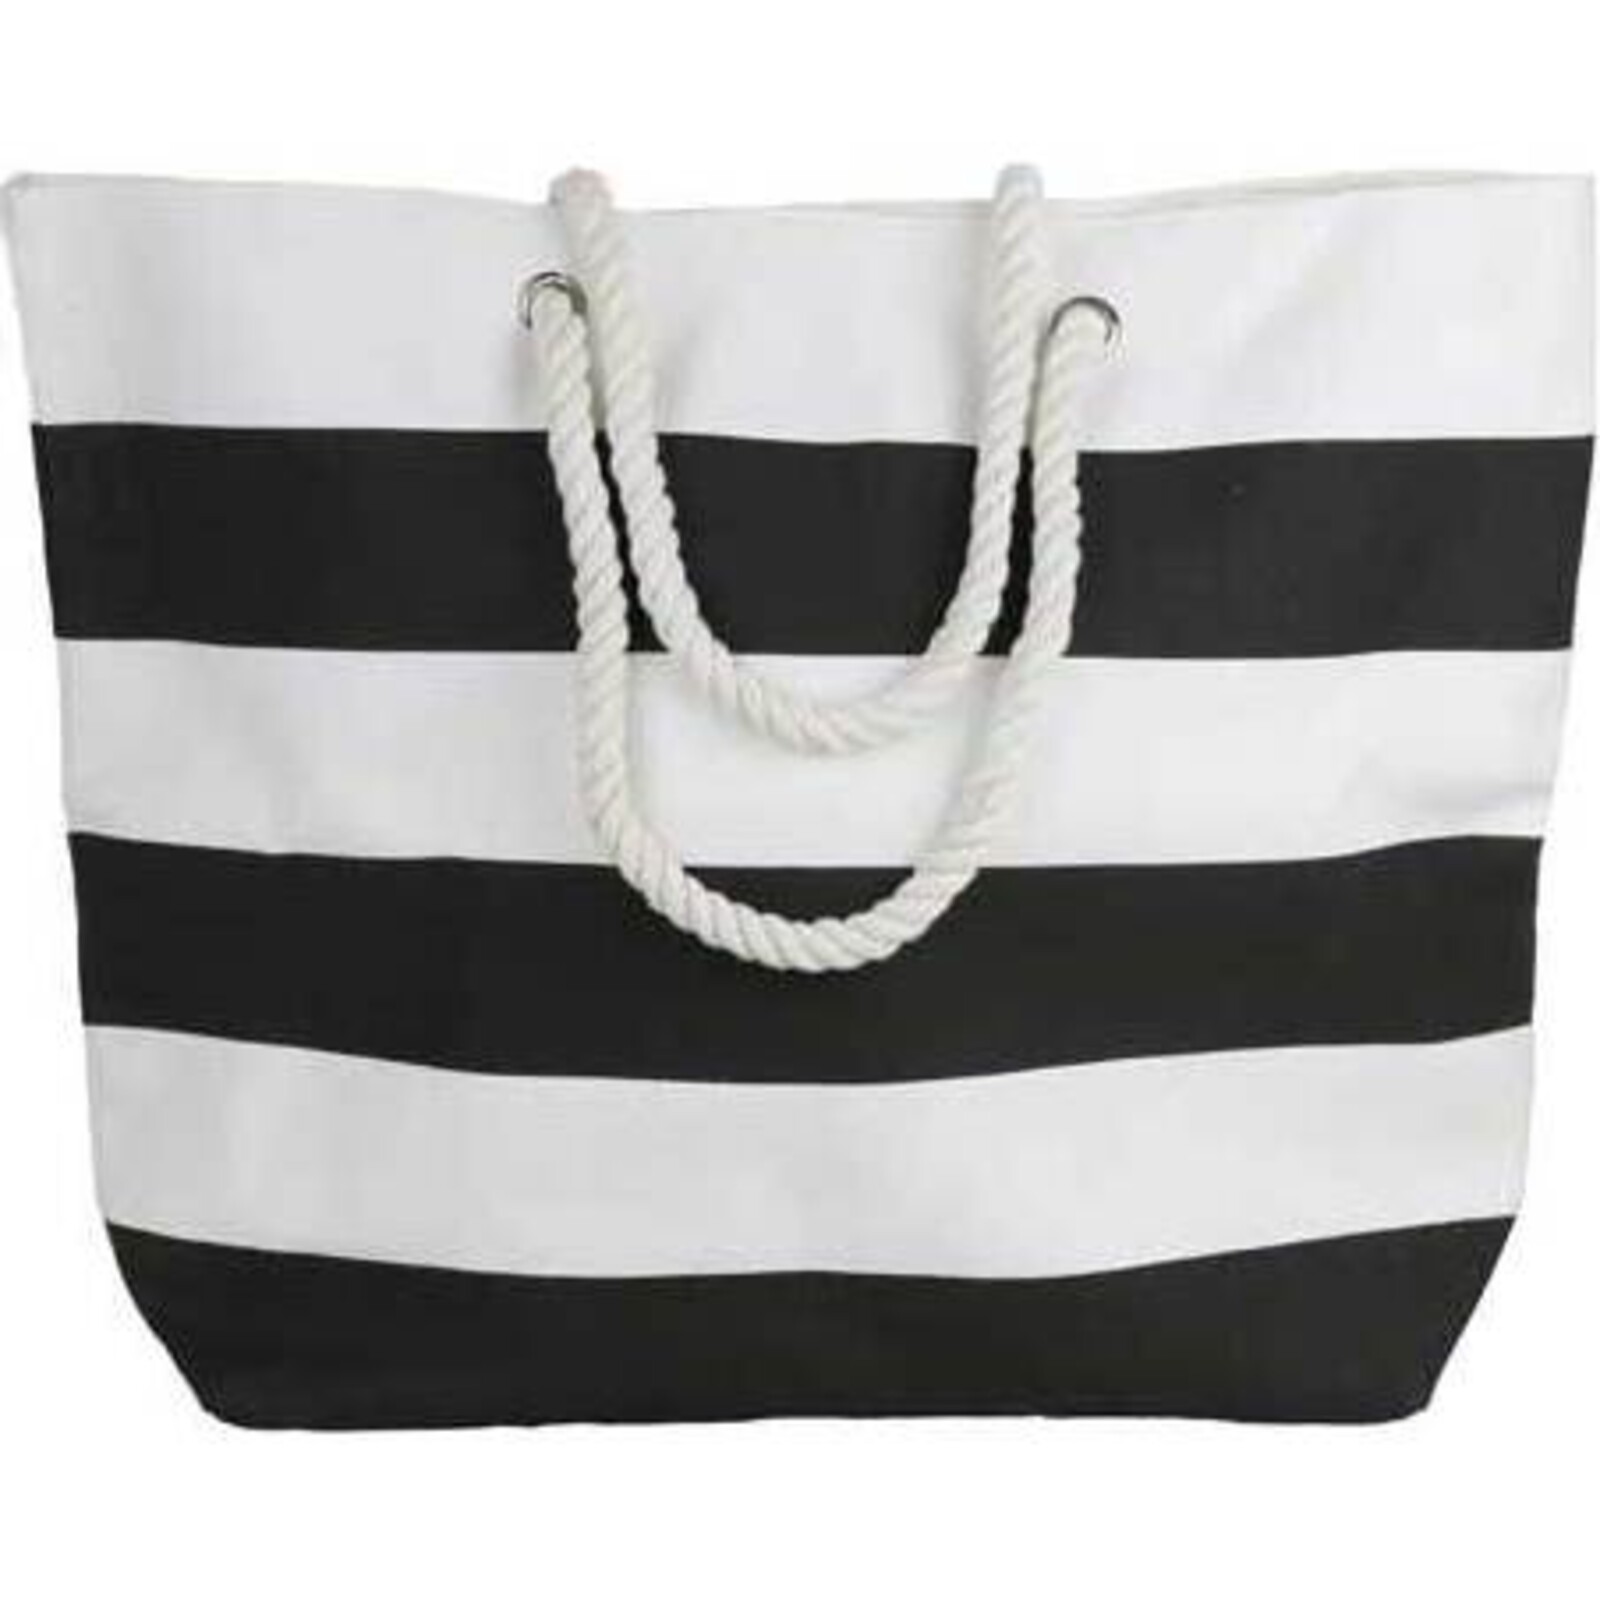 Beach Bag Black/ White Striped Canvas